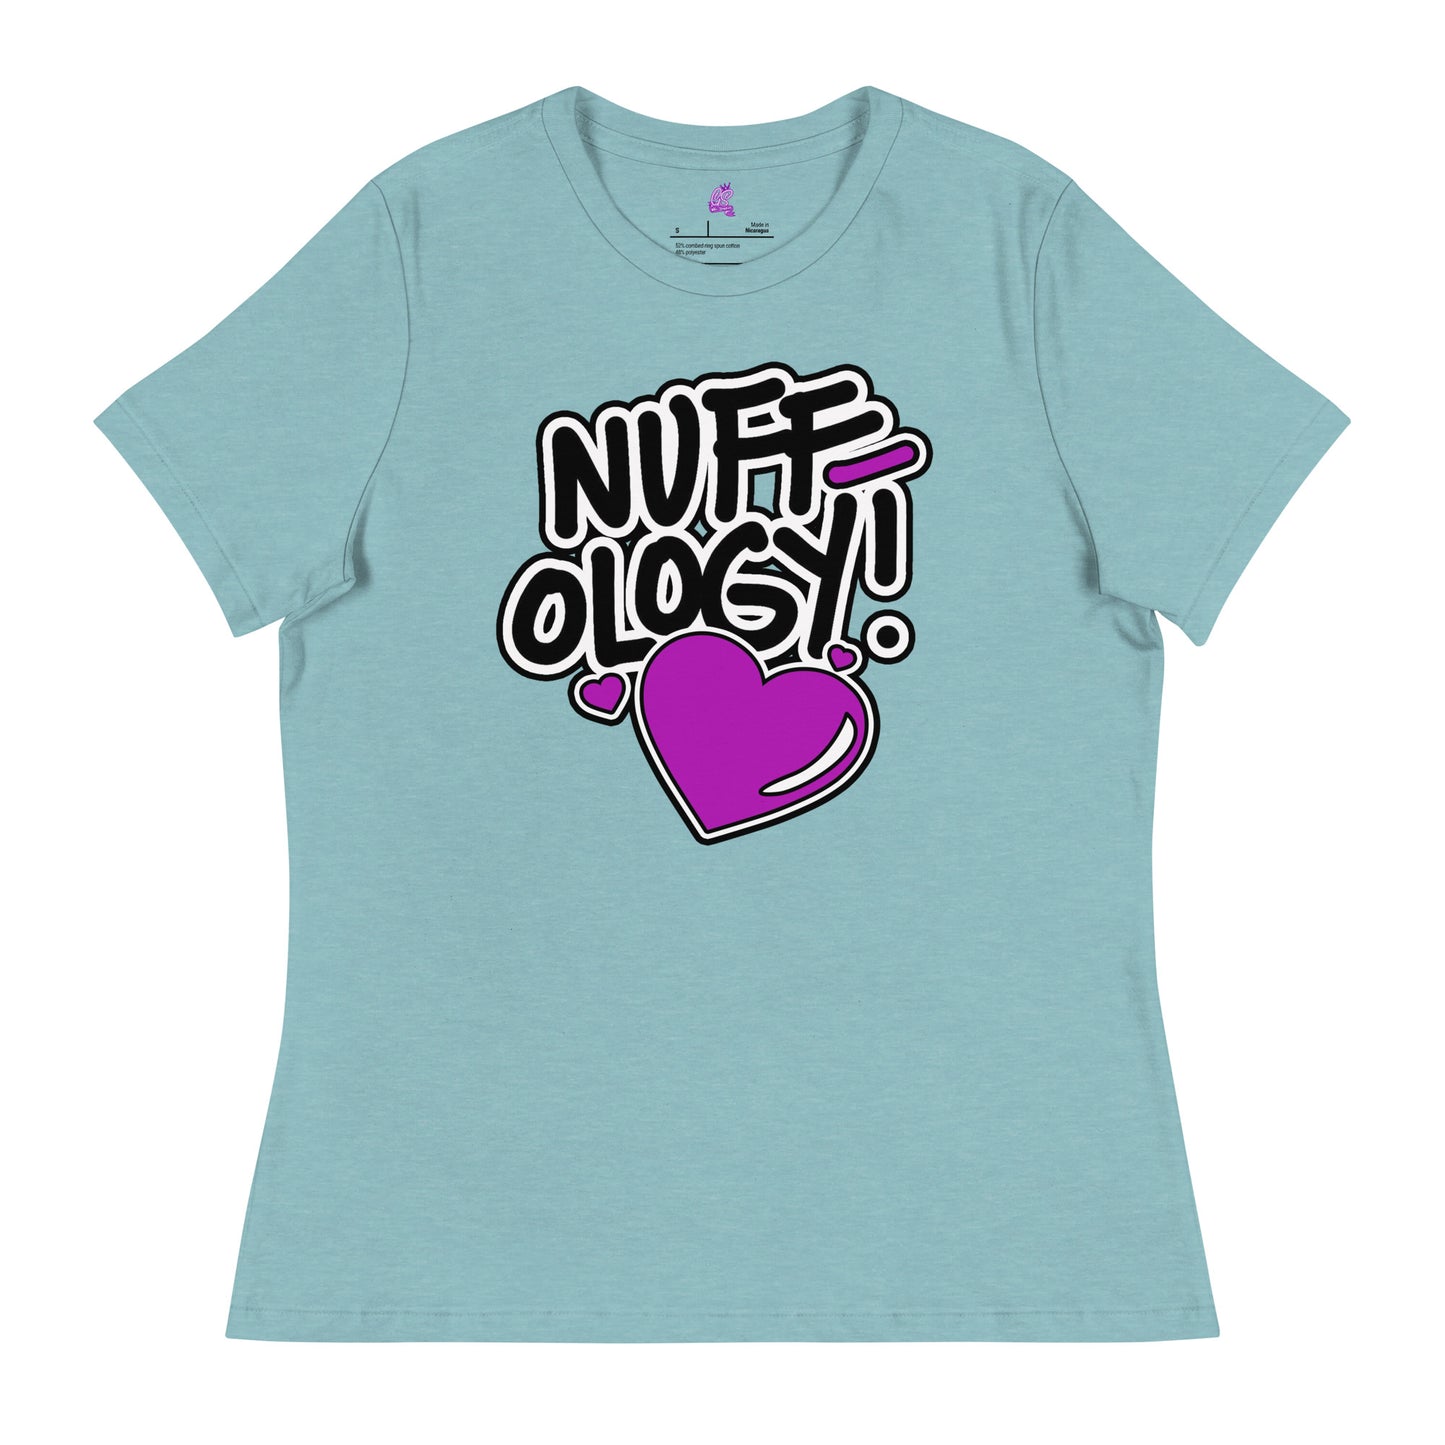 NUFFology - Women's Relaxed T-Shirt